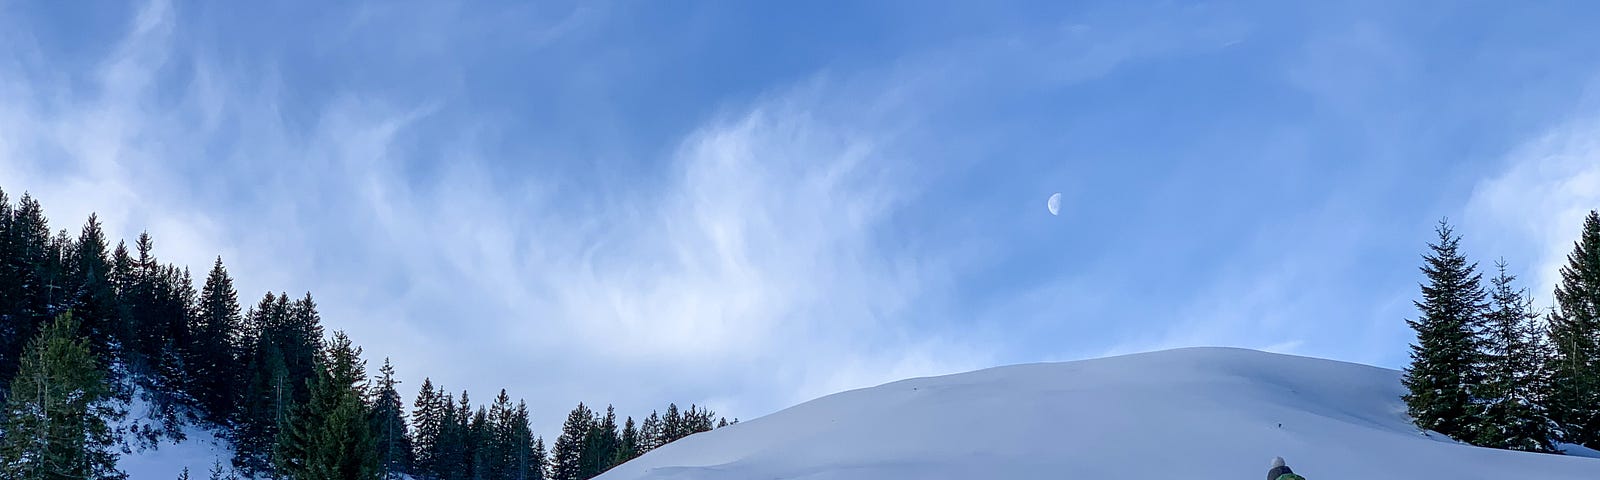 Figure climbing a snowy hill